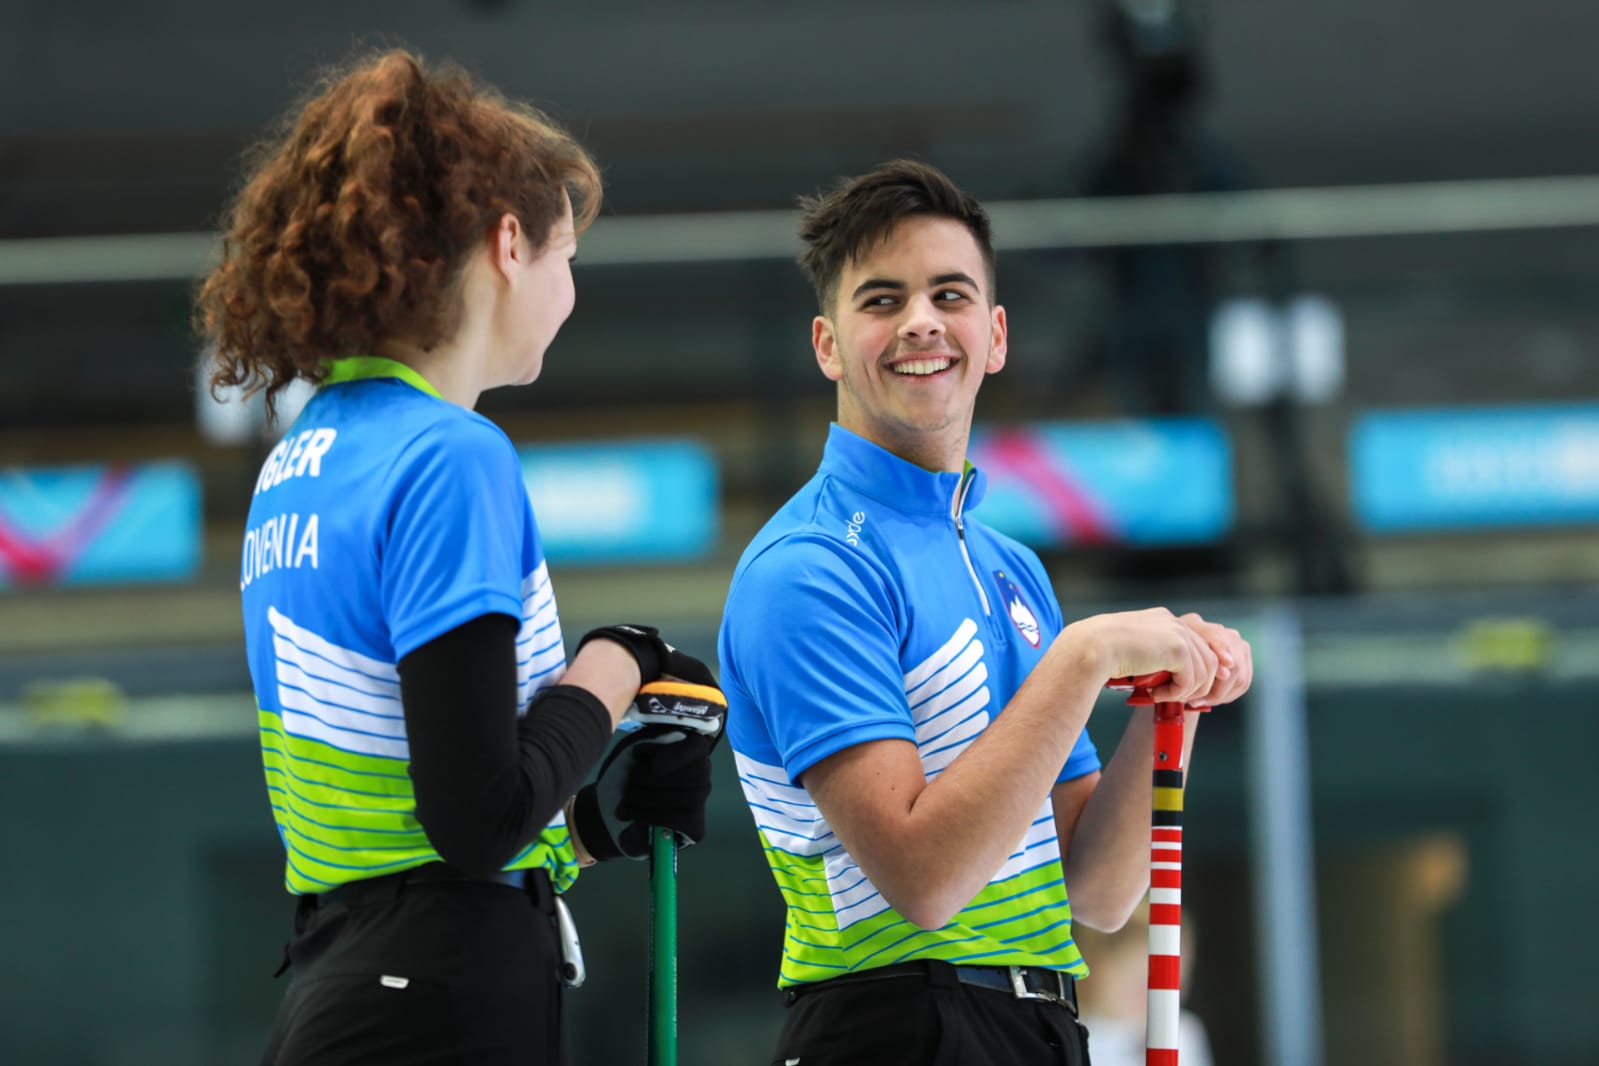 V Lozani prva zmaga za mlado slovensko ekipo v curlingu